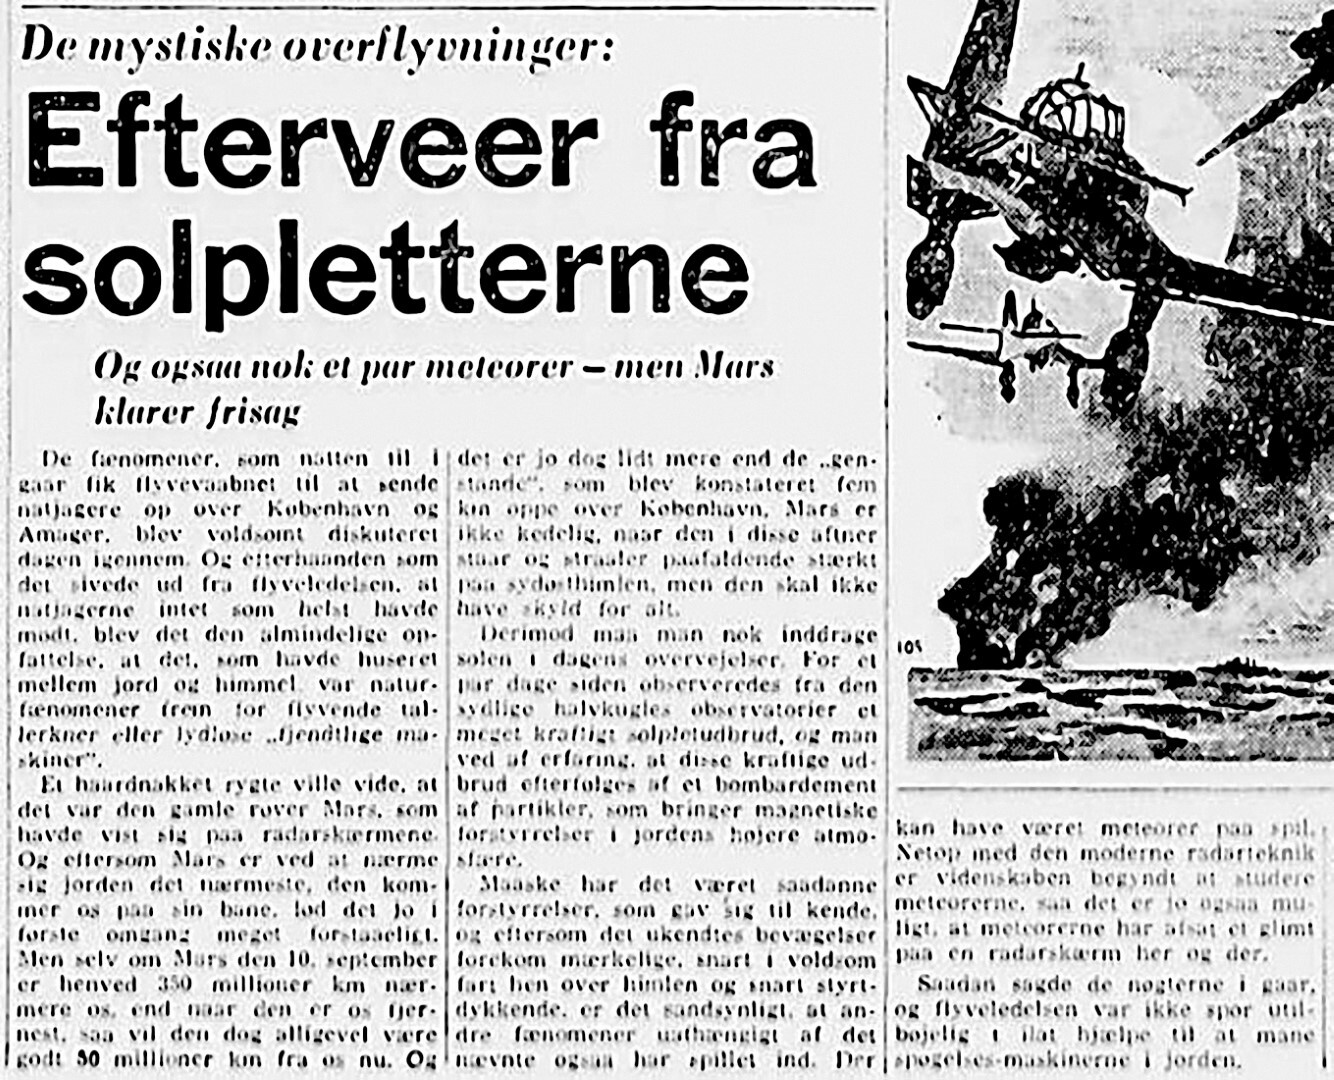 11-politiken-1956-09-04-efterveer-fra-solpletter-res-300-large